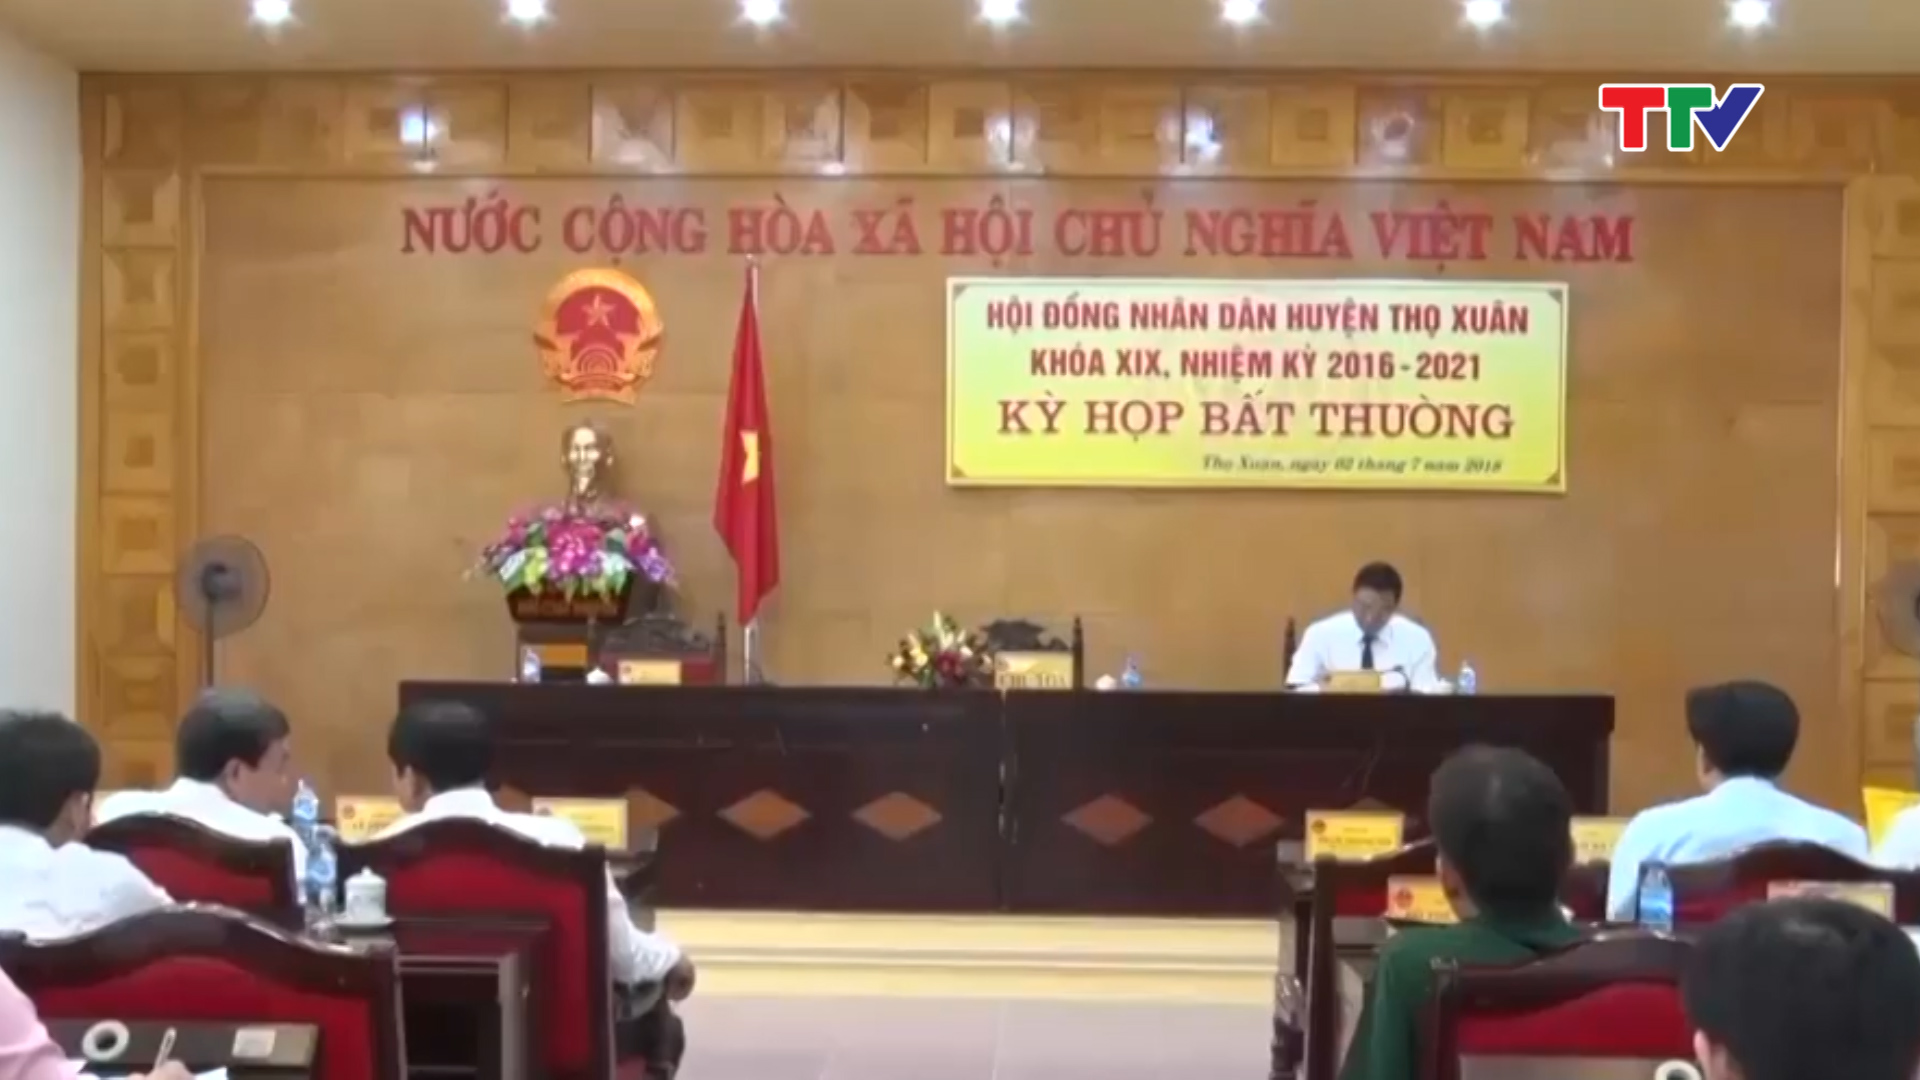 HĐND huyện Thọ Xuân:  Tổ chức kỳ họp bất thường bầu chủ tịch HĐND huyện khóa 19, nhiệm kỳ 2016 - 2021.